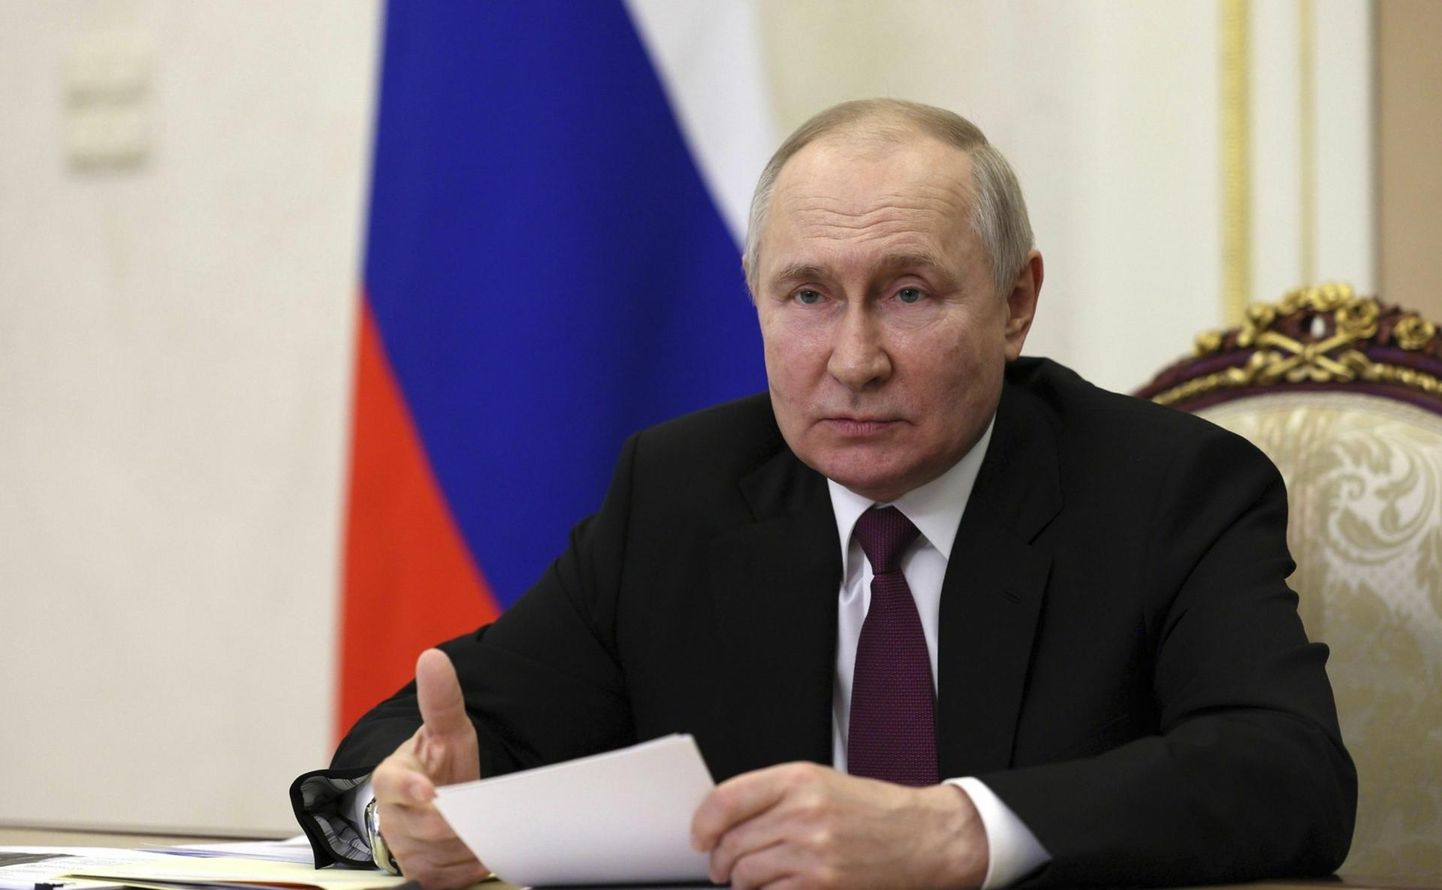 Mis saab Venemaast pärast Vladimir Putinit ja Ukraina sõda?